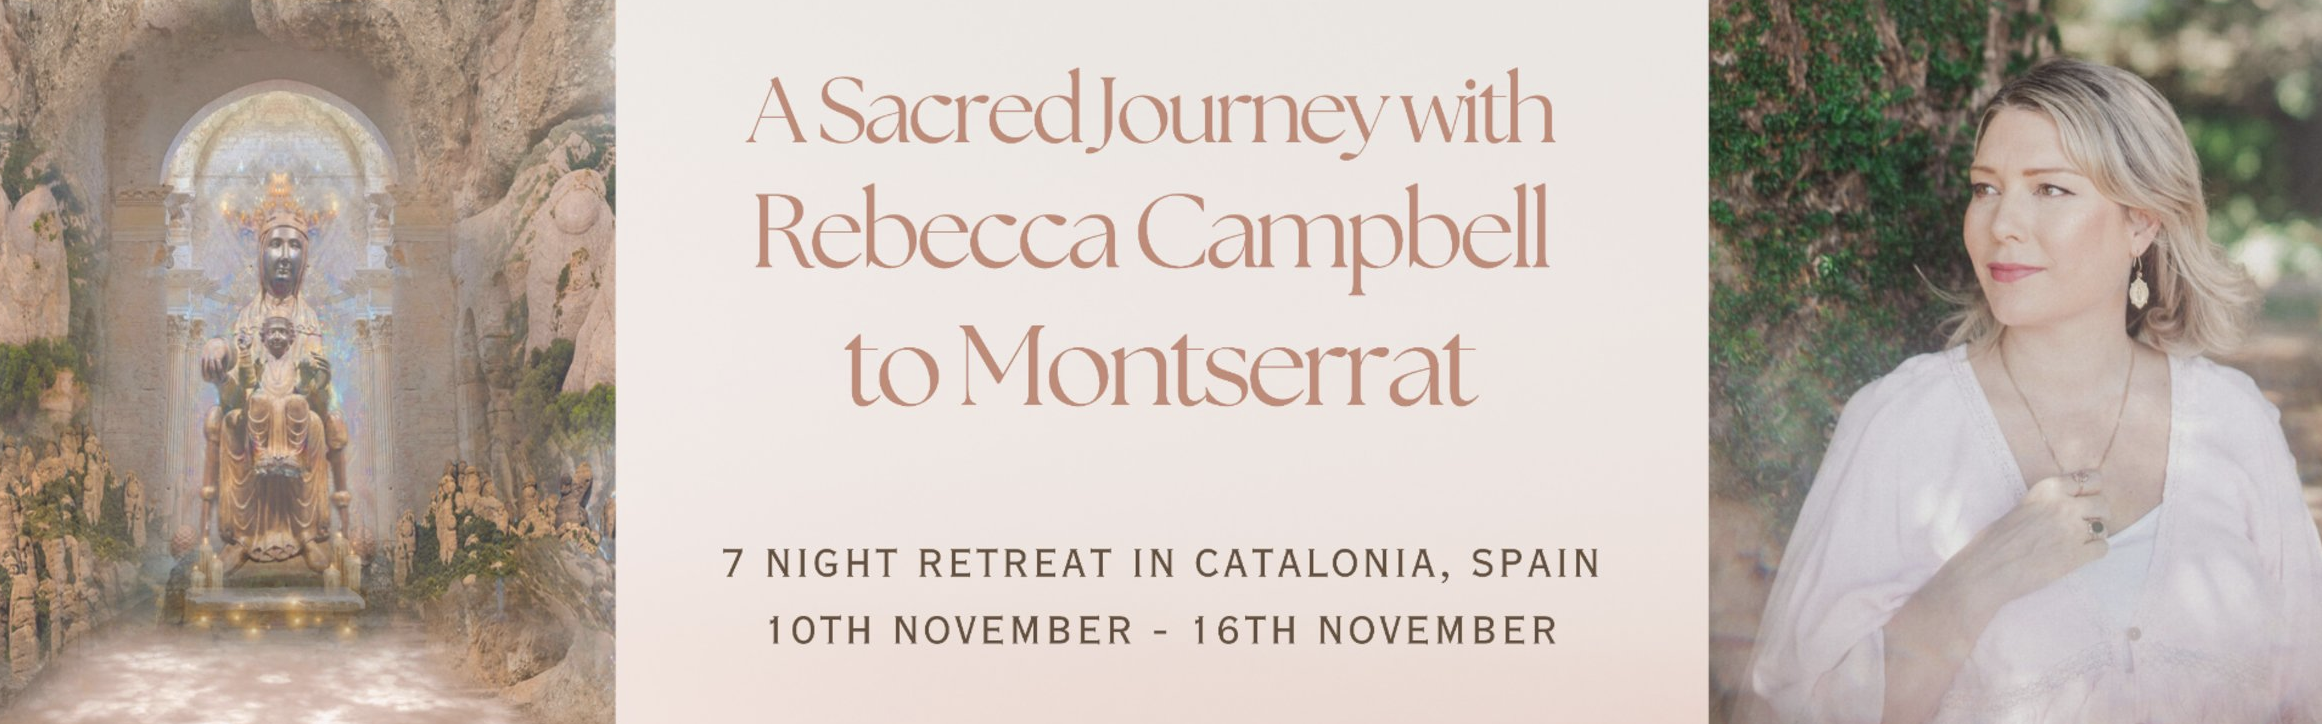 Sacred Journey to Monserrat, Spain